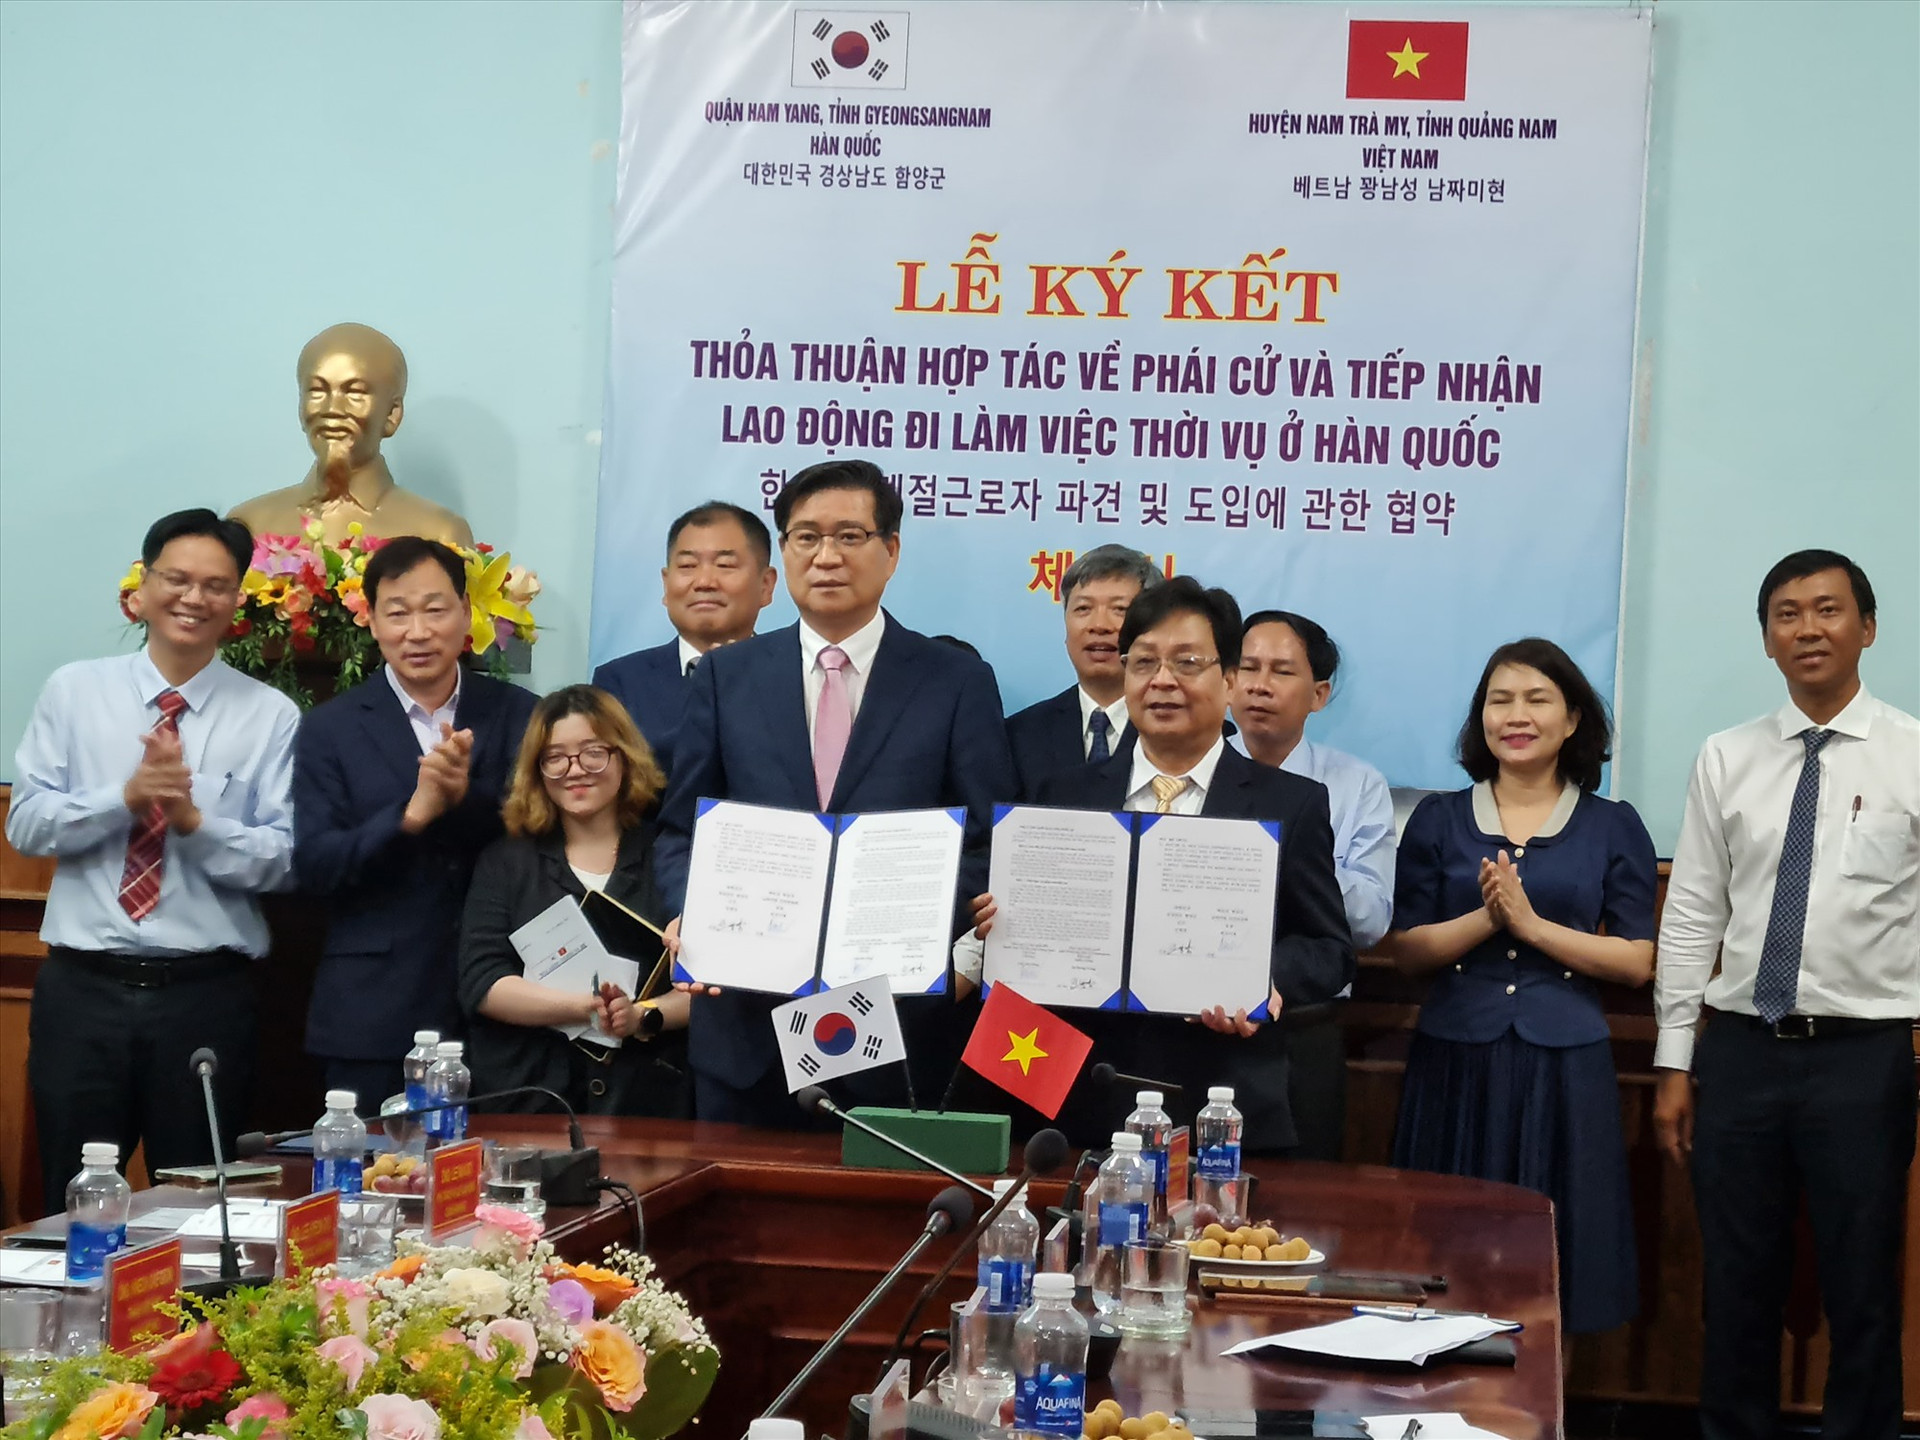 Huyện Nam Trà My và quận Ham Yang ký kết thỏa thuận hợp tác lao động. Ảnh: D.L